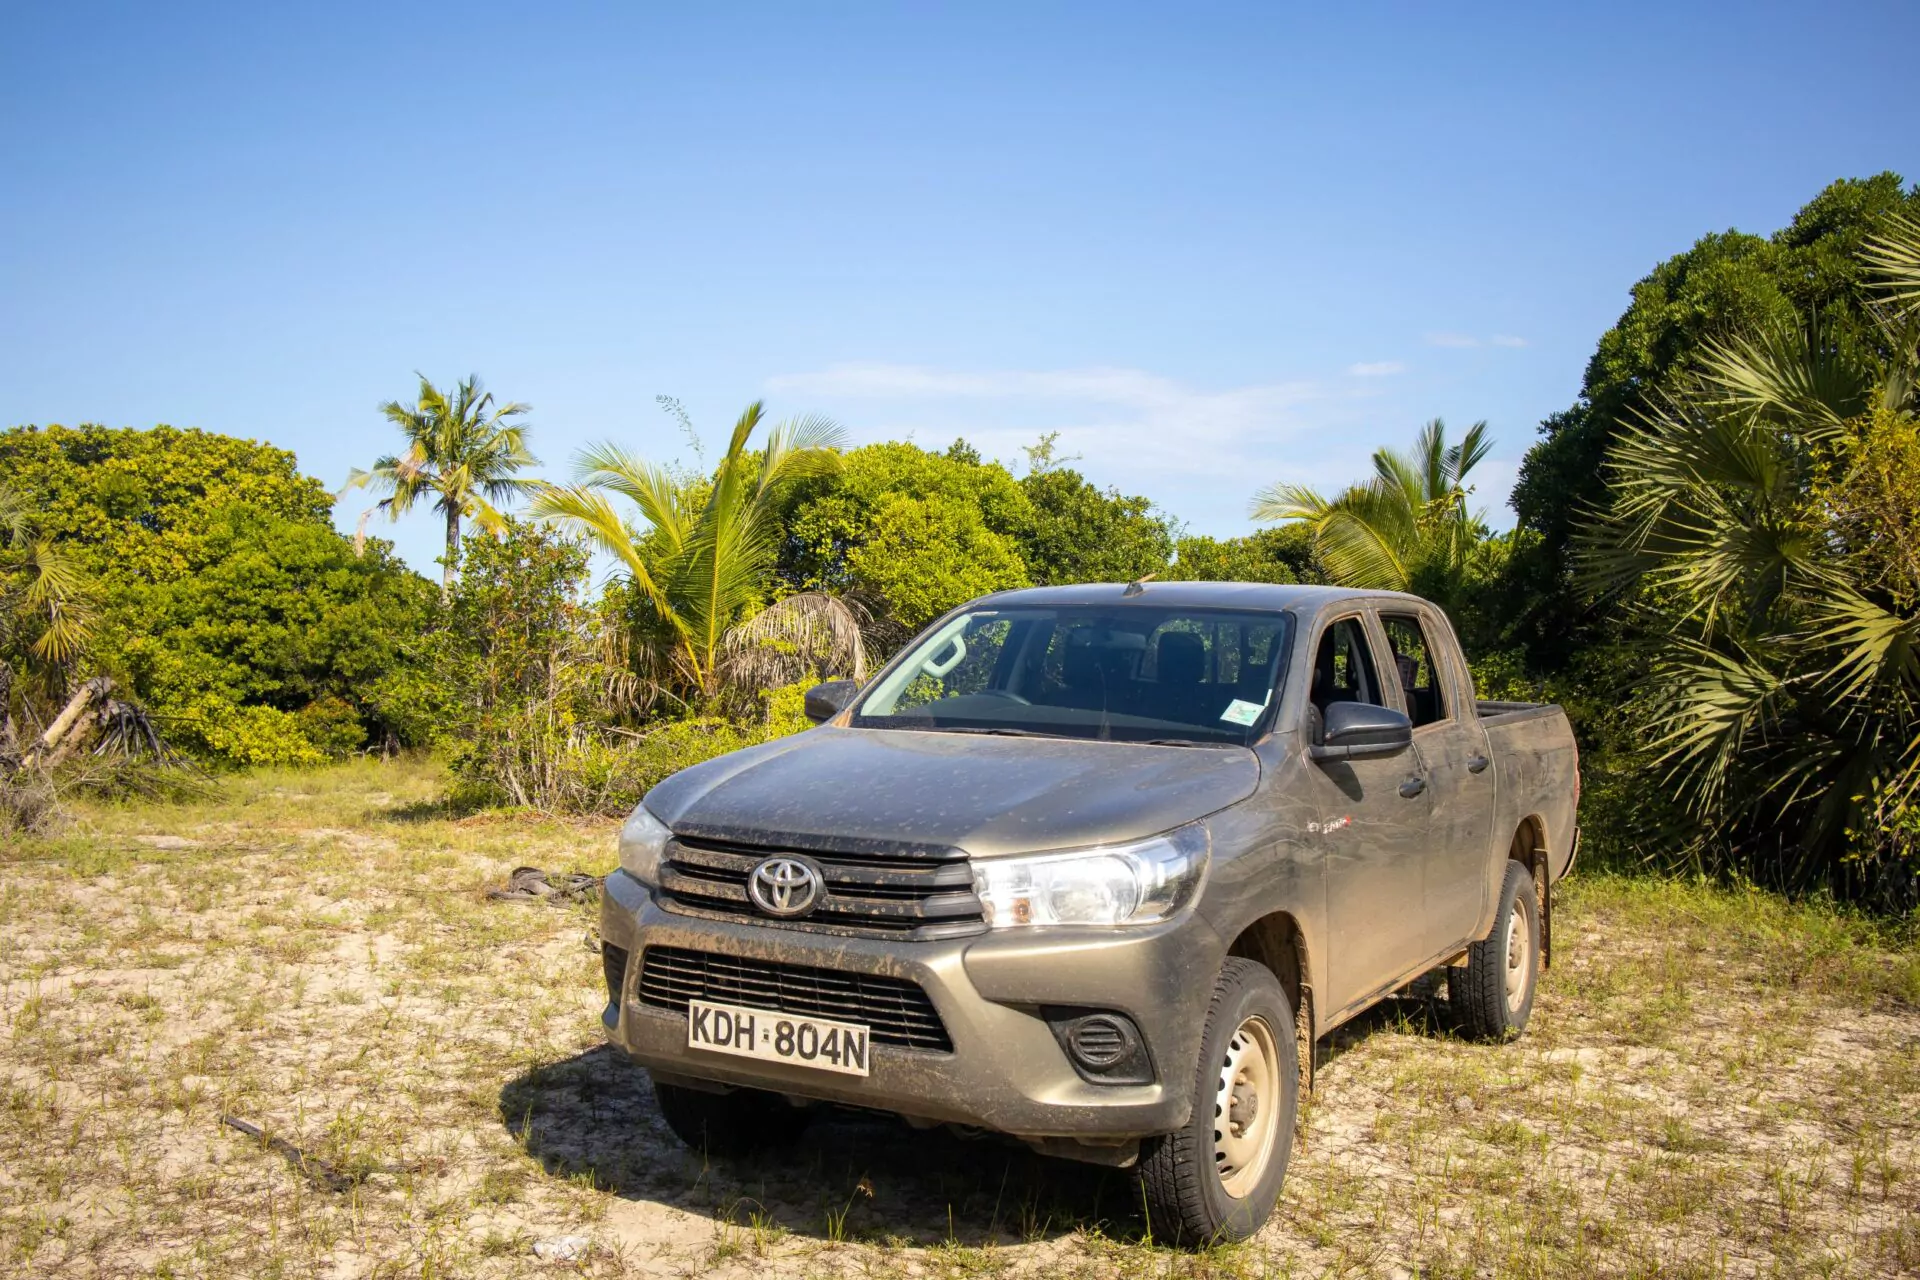 Kenia Safari Toyota Hilux Pickup Gelandewagen vorne